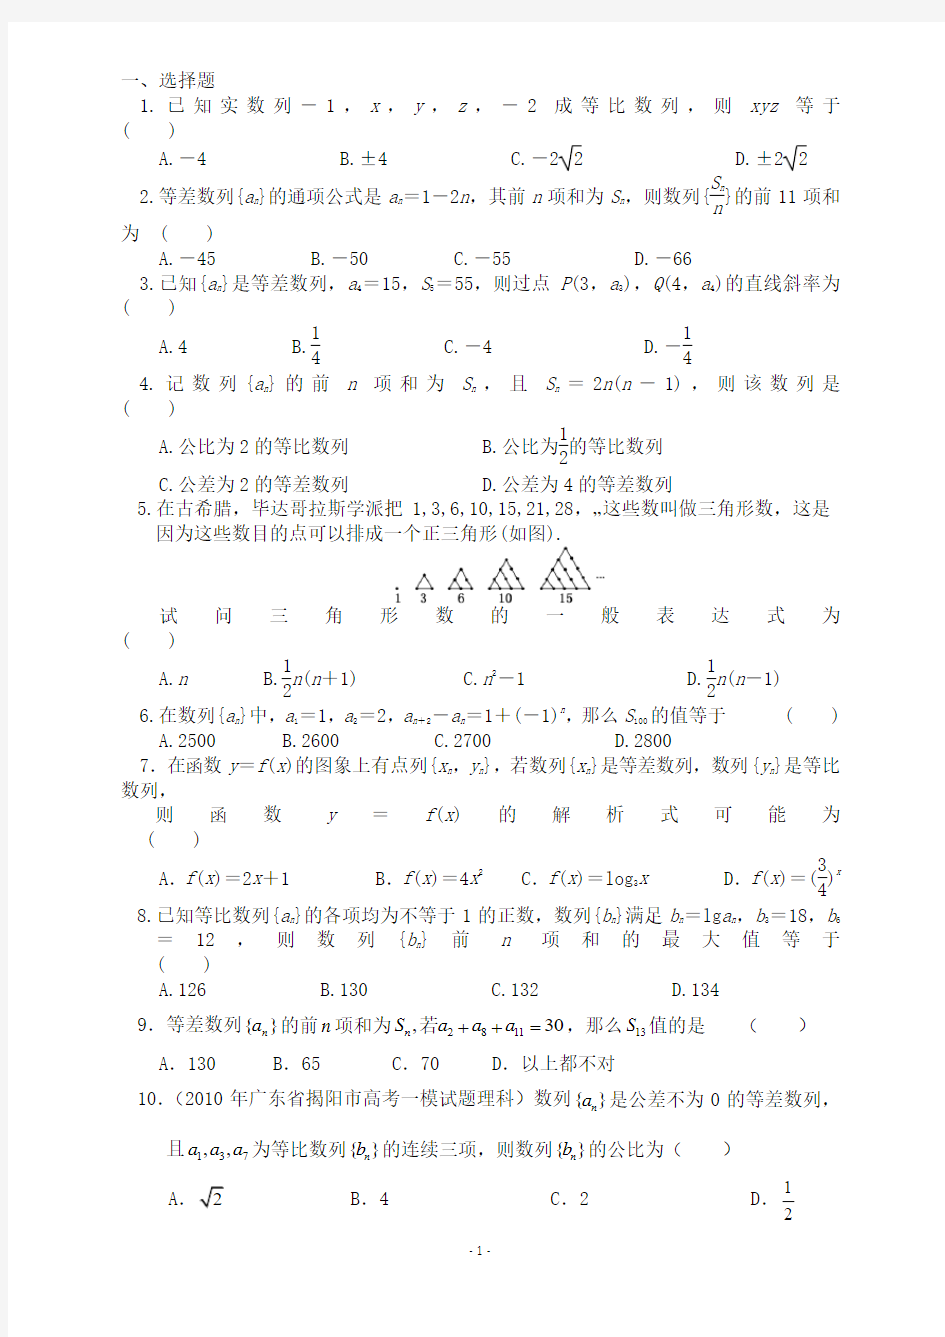 2010-2011普宁城东中学理科数学_期末数列复习题和答案[1]1